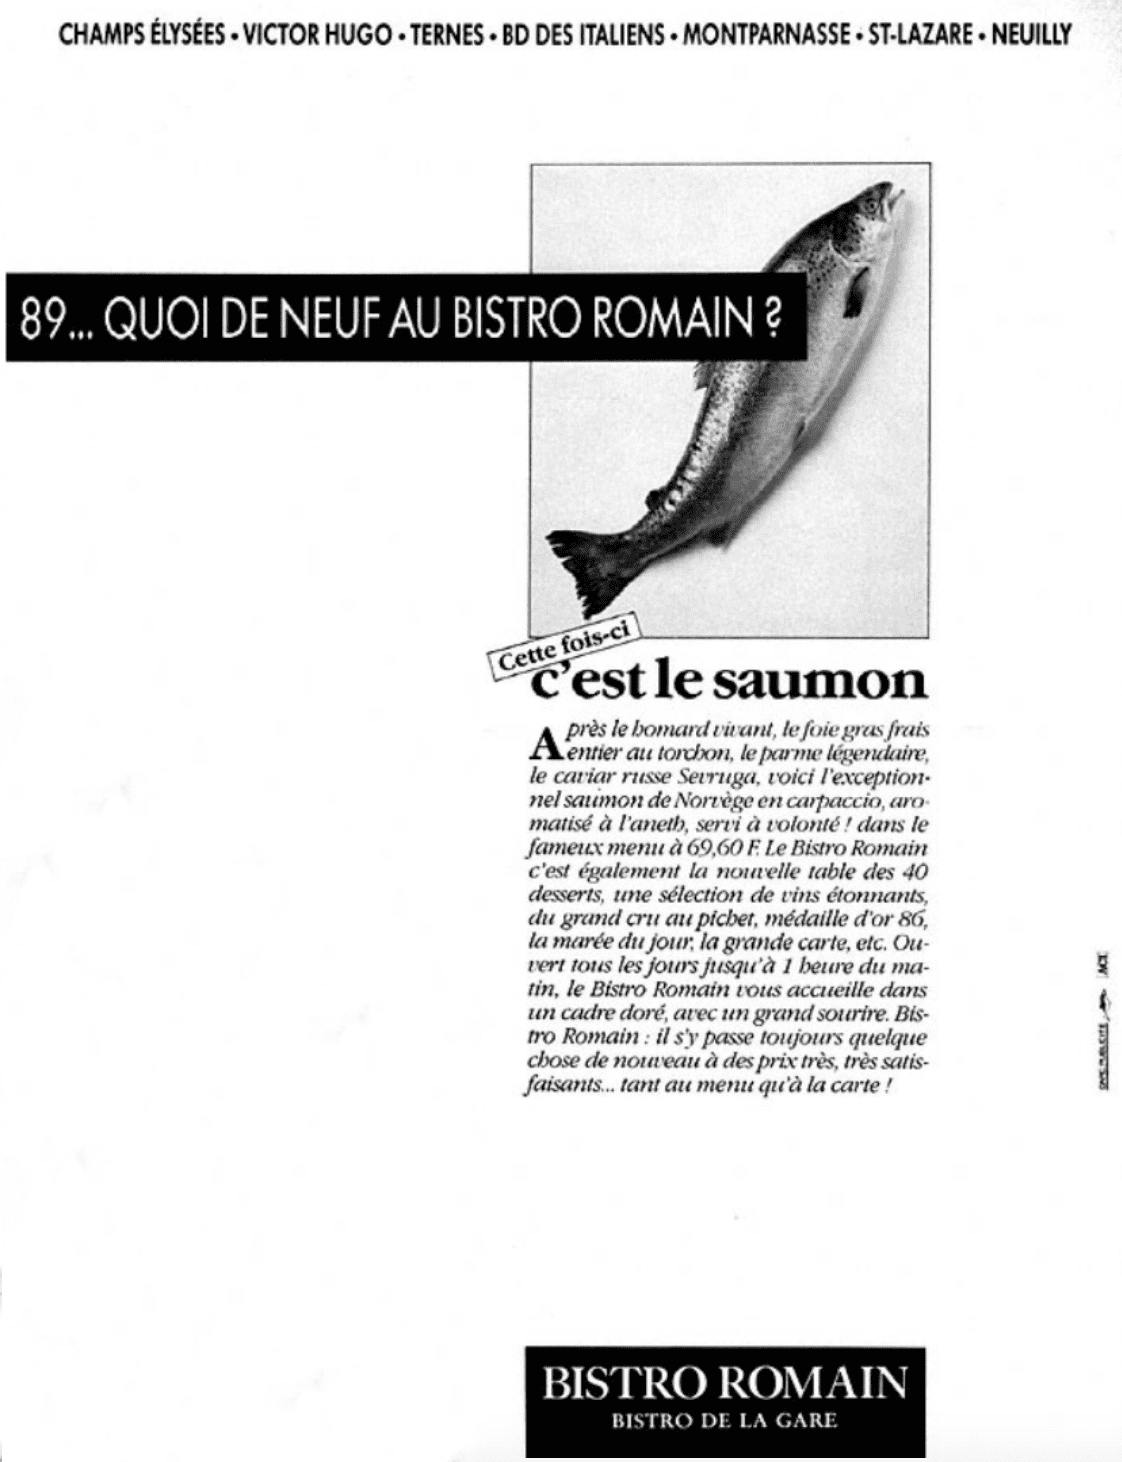 Bistro Romain publicité ancienne carpaccio saumon norvégien 